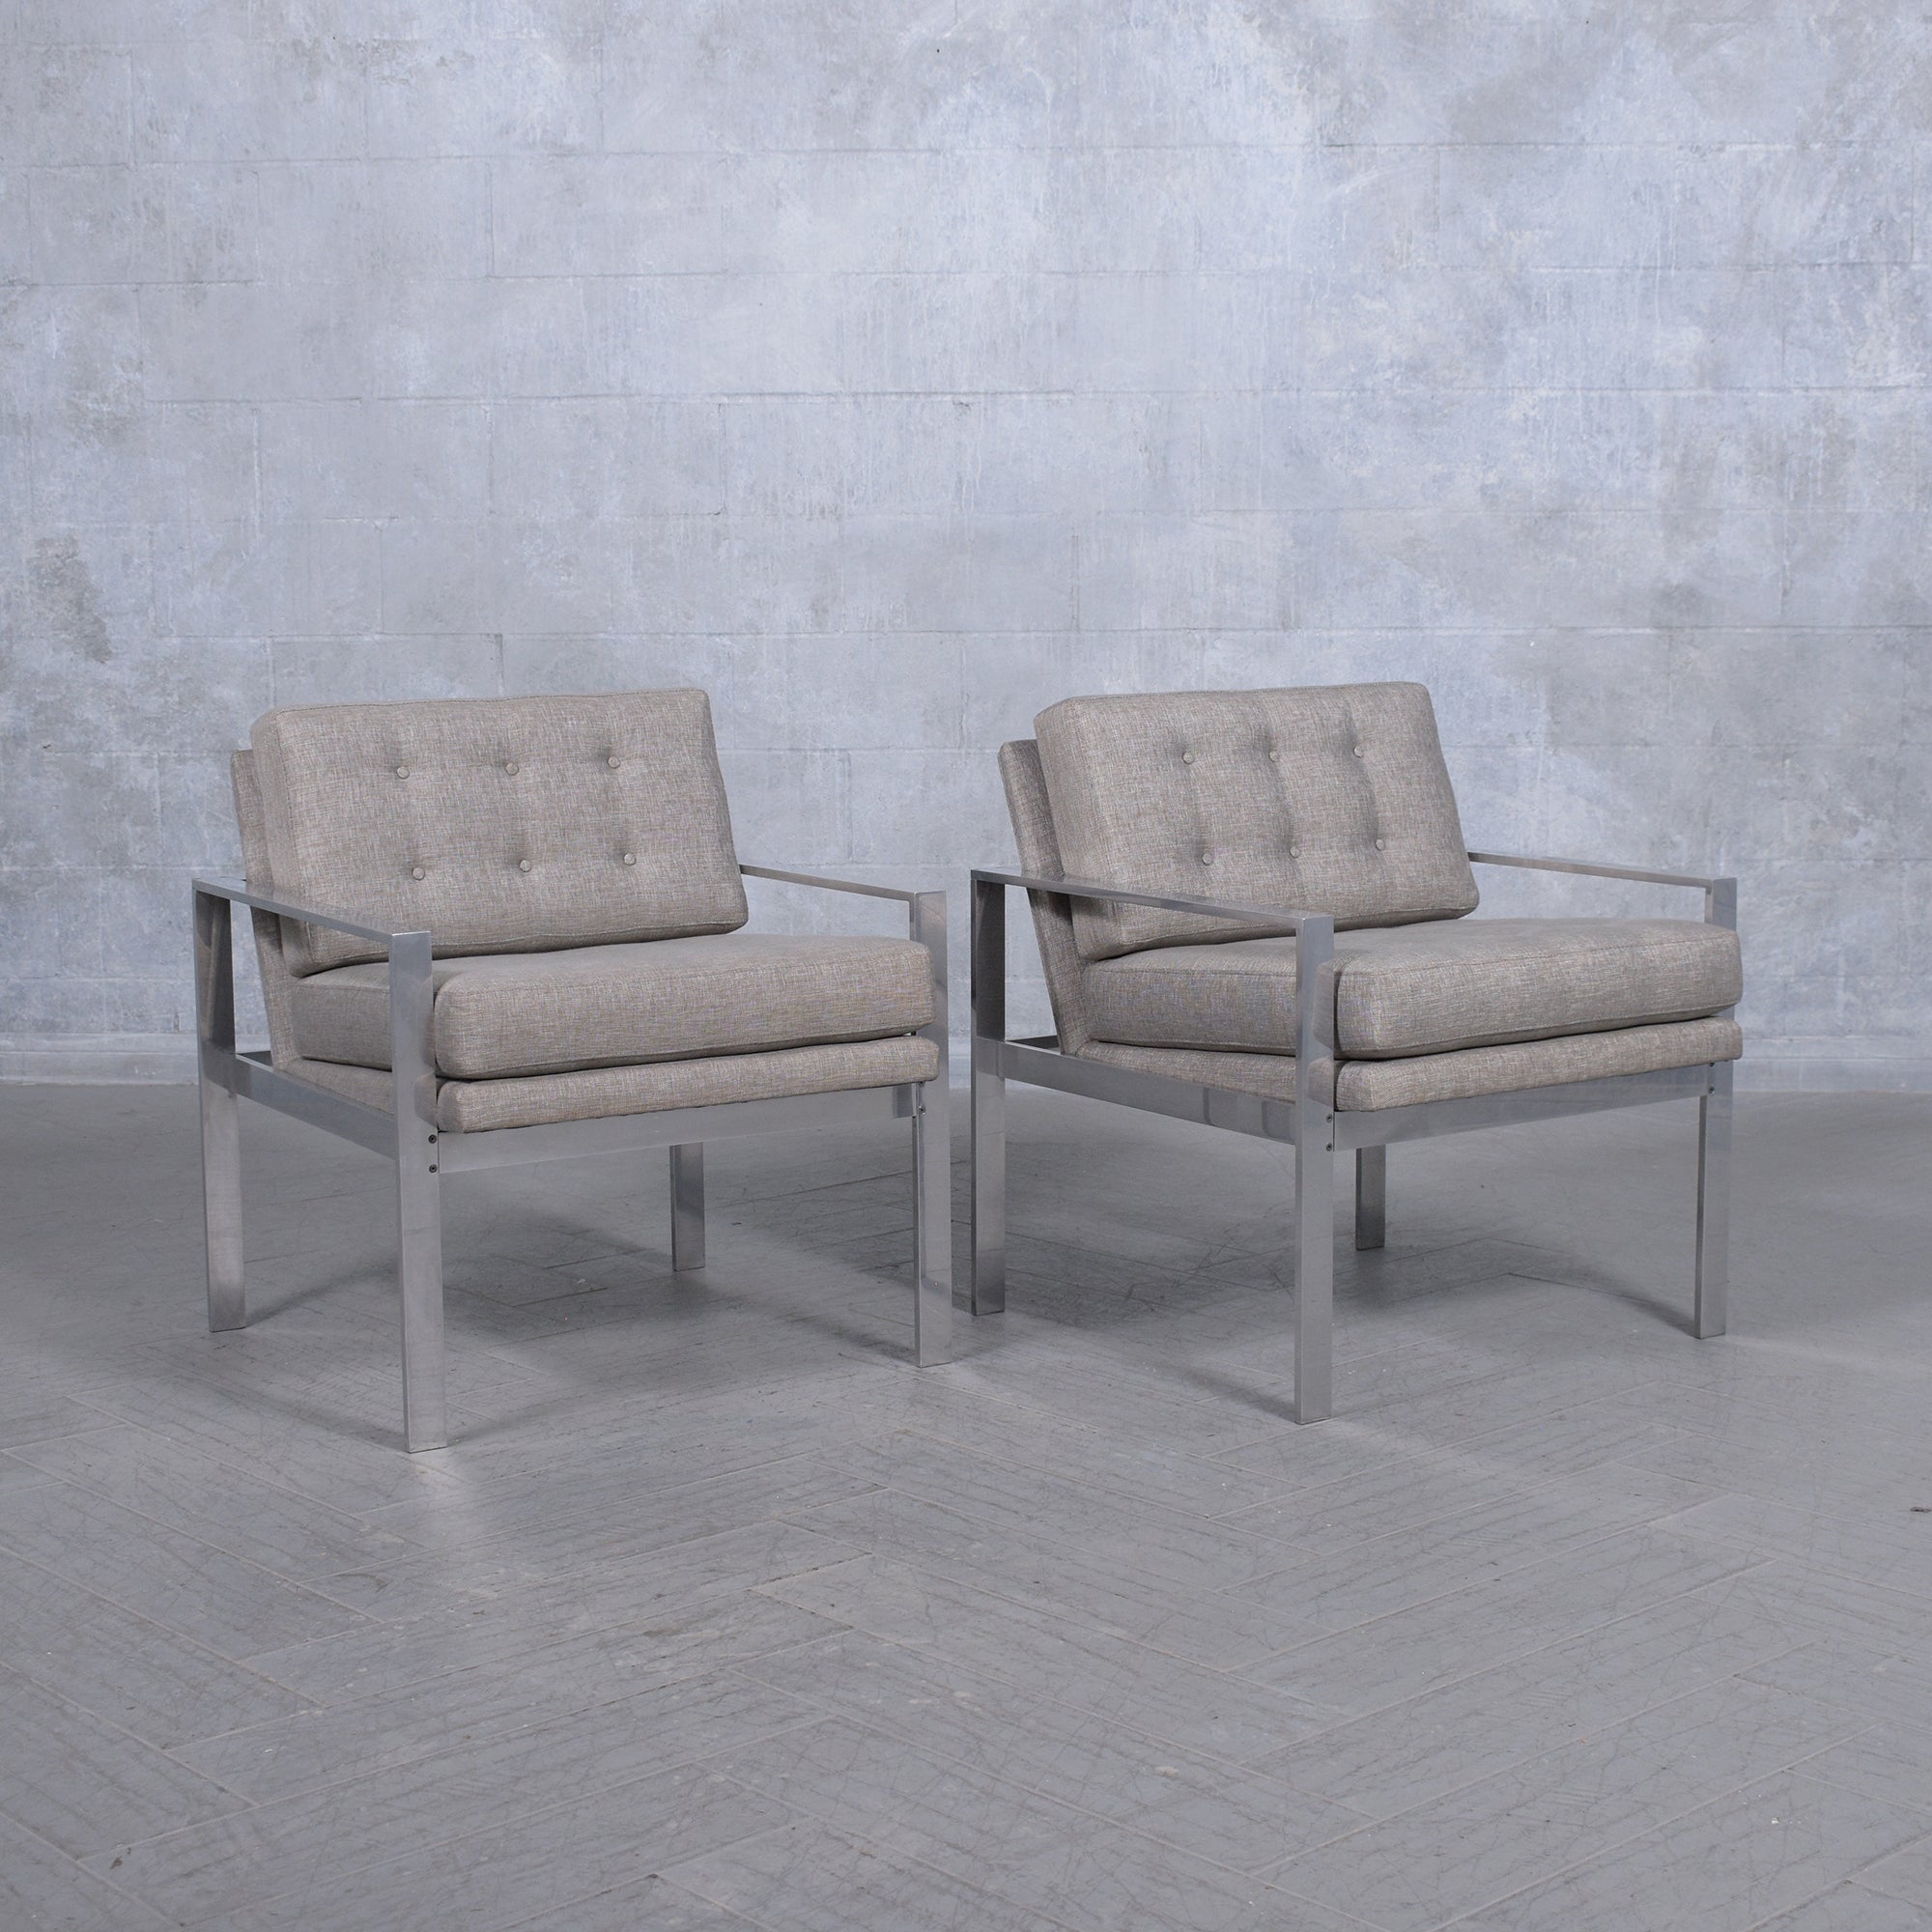 Tauchen Sie ein in die zeitlose Eleganz des modernen Designs aus der Mitte des Jahrhunderts mit unserem sorgfältig restaurierten Paar Milo Baughman Lounge Chairs. Diese ikonischen Stücke, die für ihren klassischen Stil und unübertroffenen Komfort